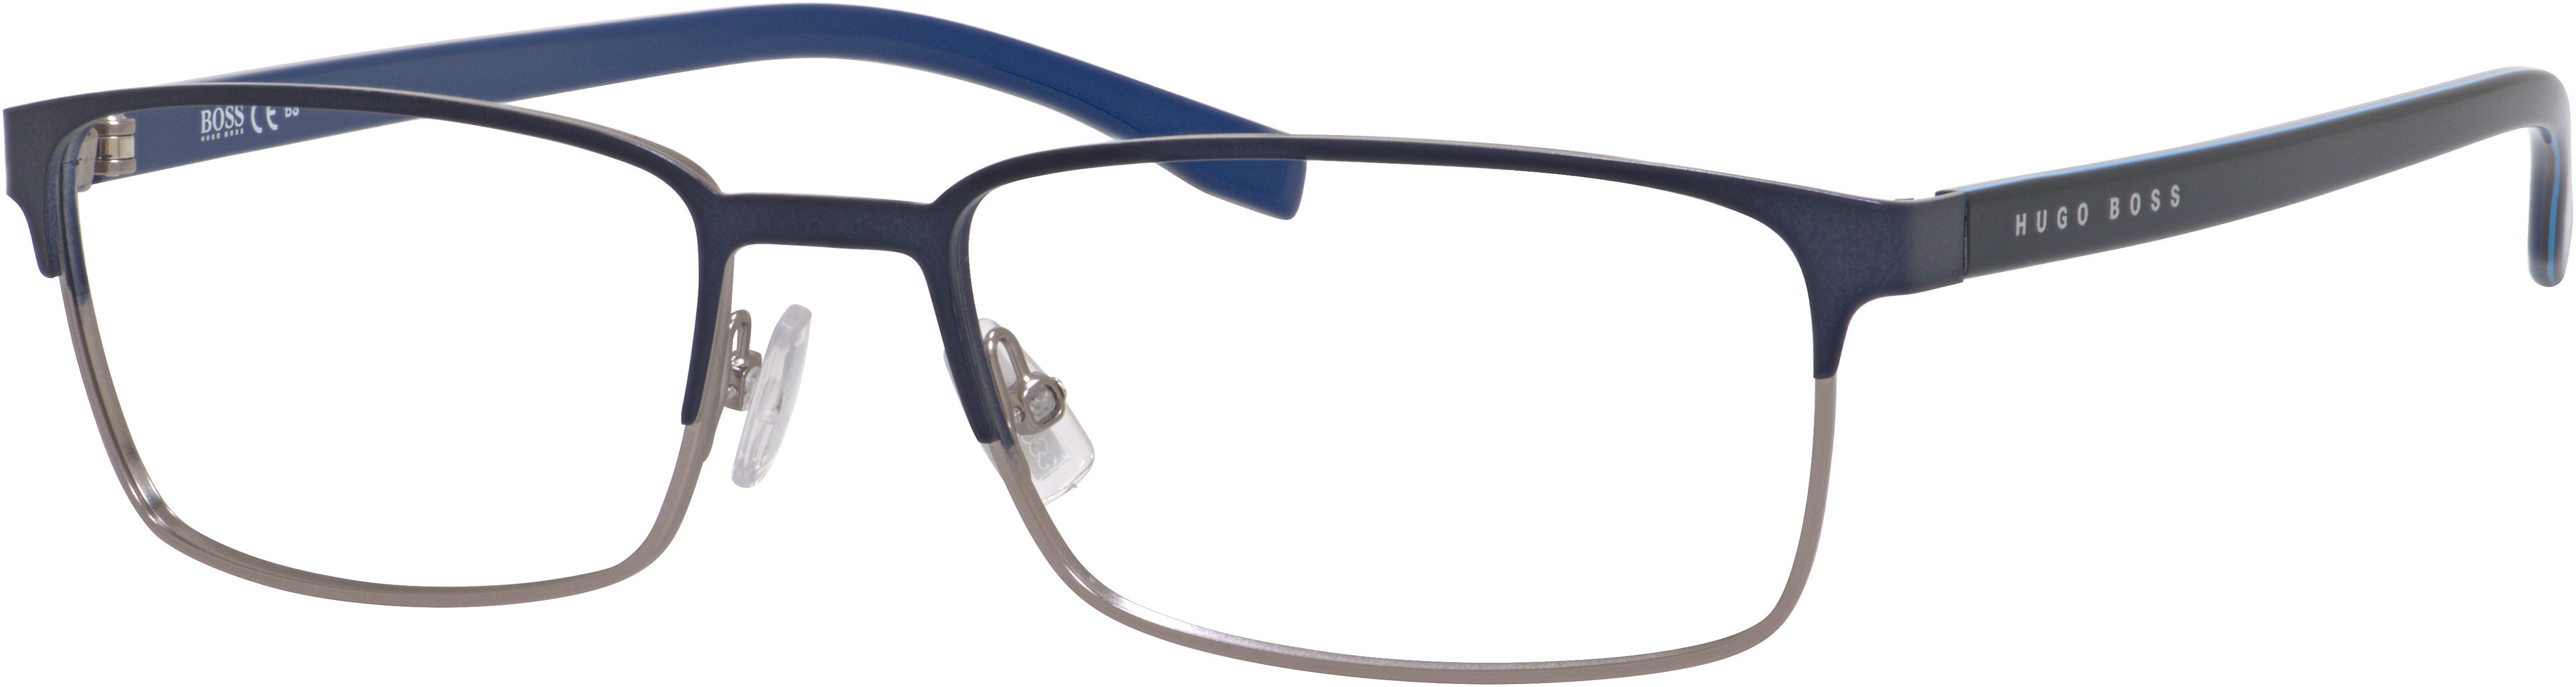 Boss (hub) Boss 0766 Rectangular Eyeglasses 0QJF-0QJF  Matte Blue (00 Demo Lens)